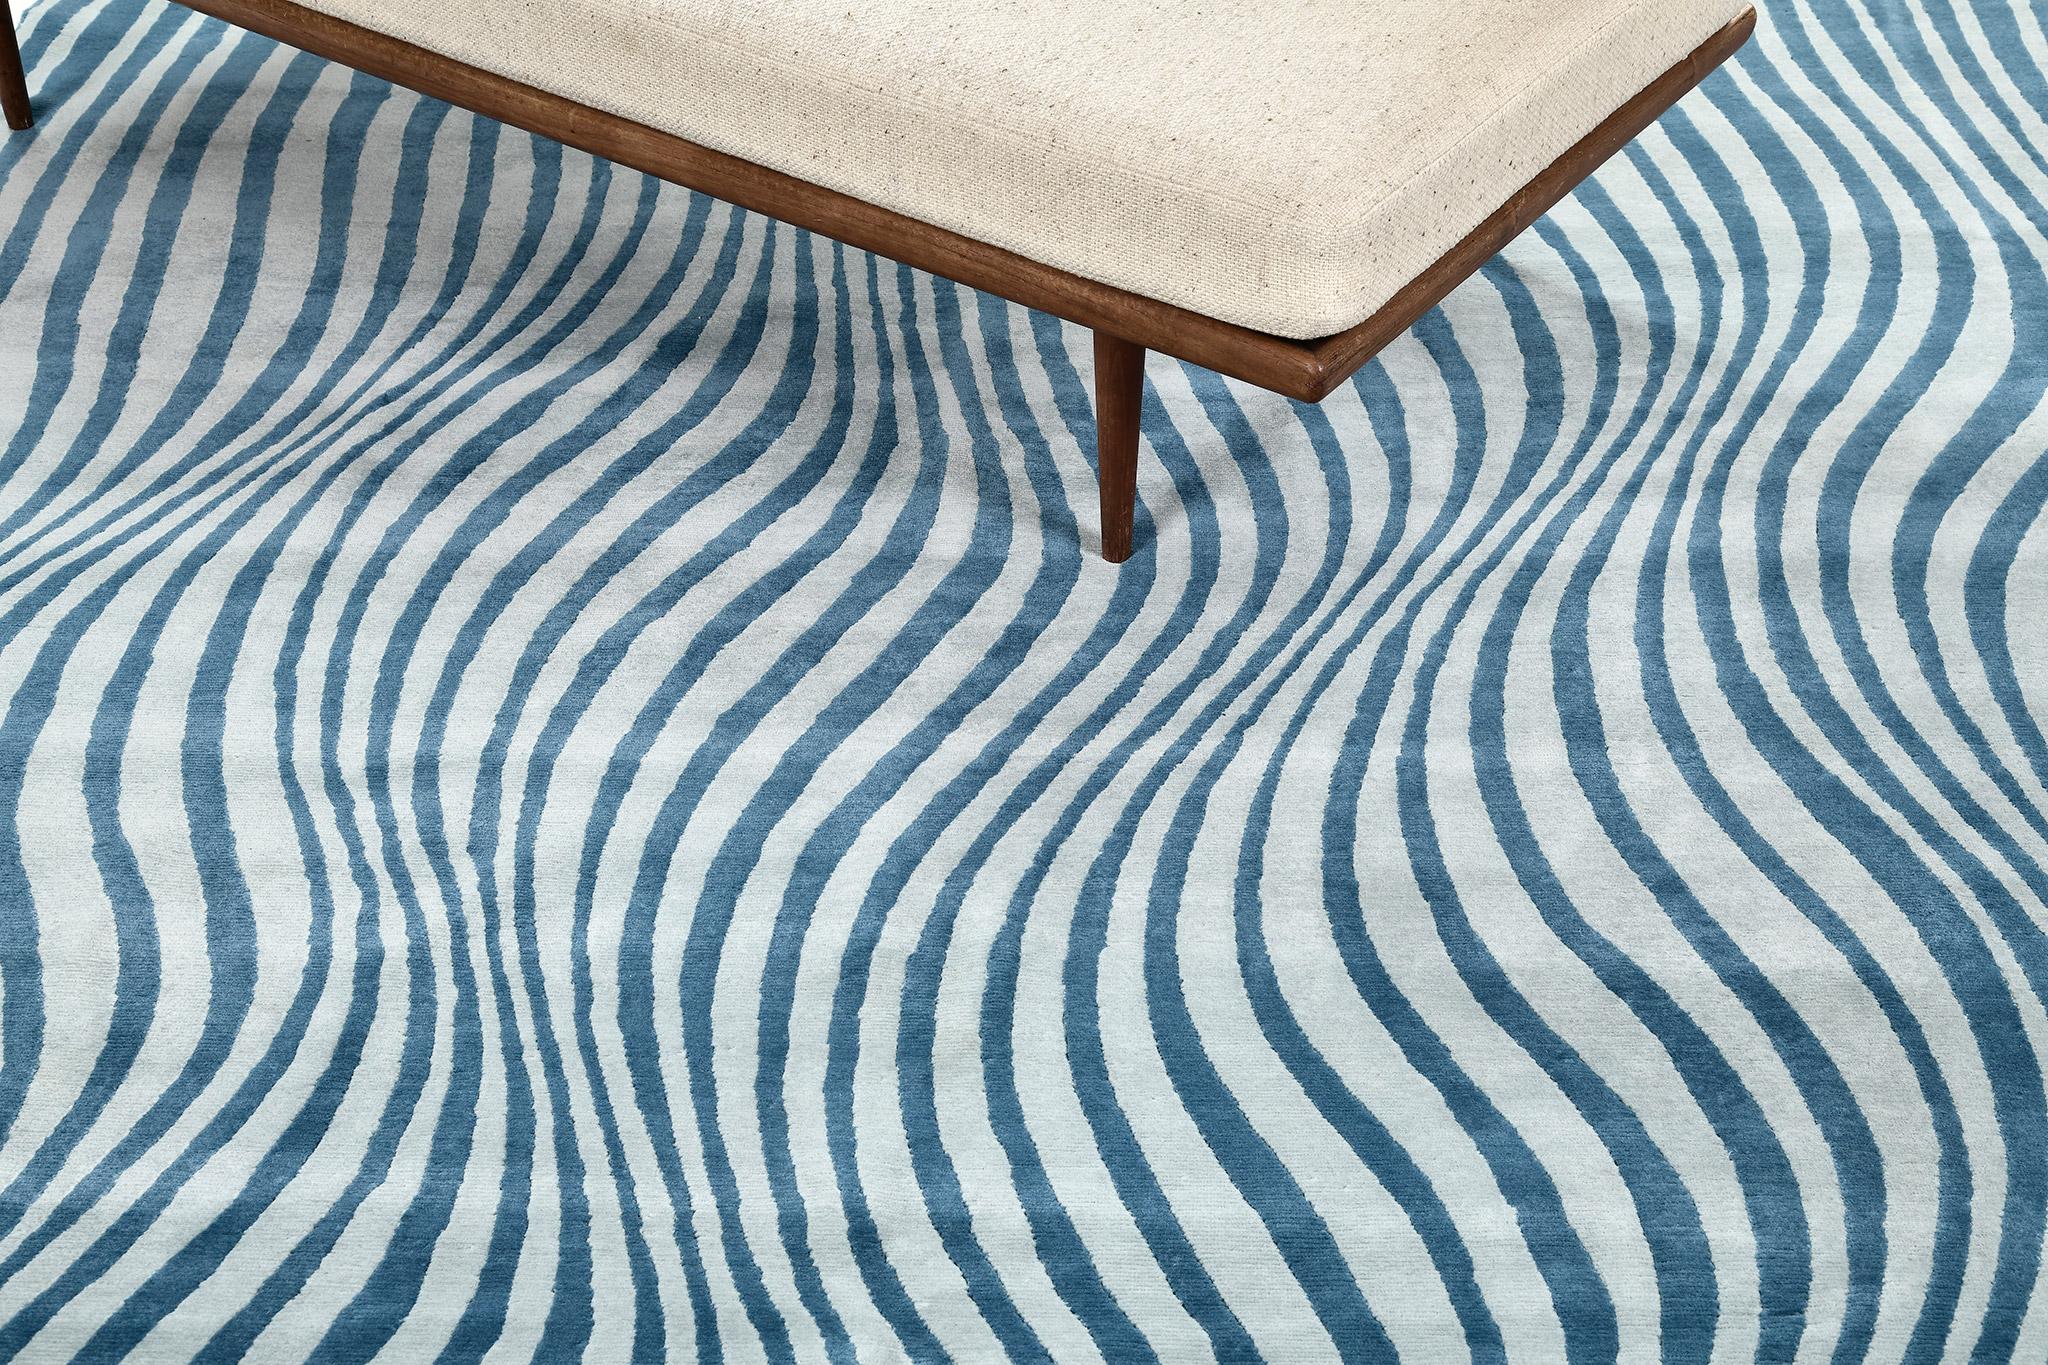 Un tapis au design moderne qui donne à votre espace une touche audacieuse et distinctive. L'effet d'ondulation donne au spectateur une impression d'illusion lorsqu'il voit ce tapis fantastique. Fantaisiste et en même temps séduisant, ce tapis